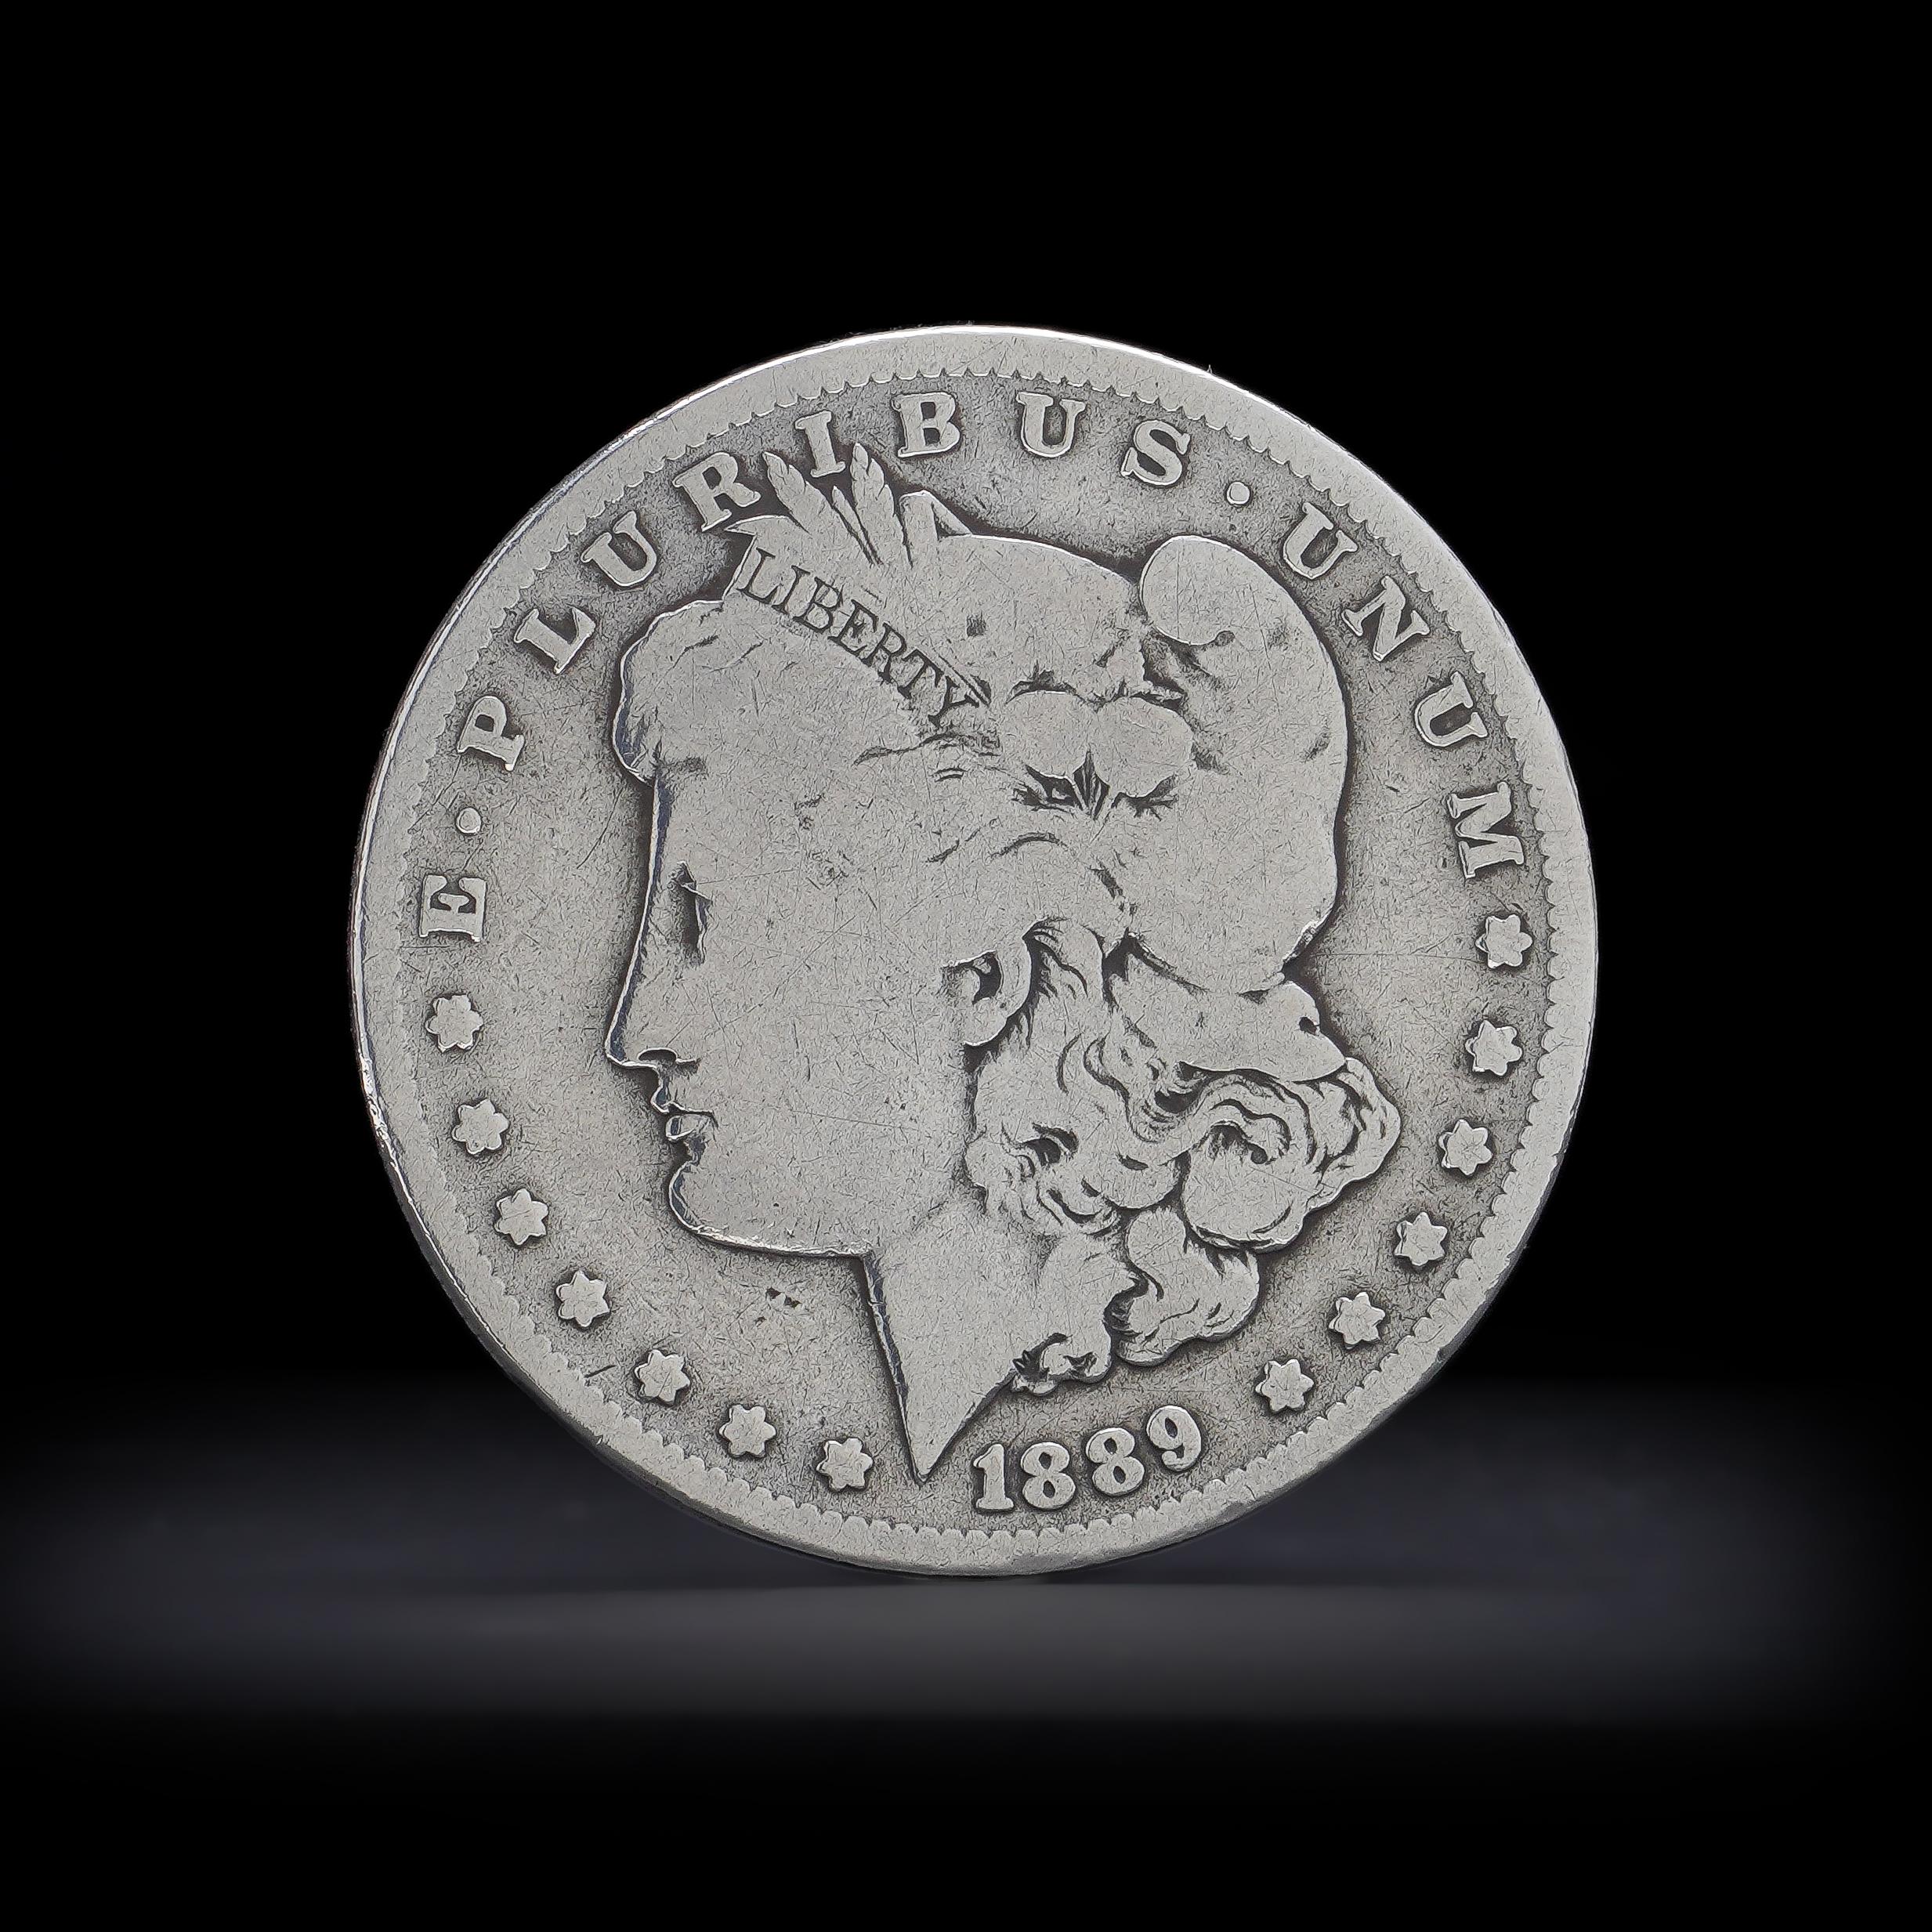 Antiker 1889 O Morgan Dollar.
Feingehalt Silber: 900/1000
Hergestellt in den USA, 1889
Münze: New Orleans
Wird mit einem Reinheitszertifikat für Silber geliefert.  

1878 ist das erste Jahr der beliebten Morgan-Dollar-Serie. 

Der Morgan Dollar ist